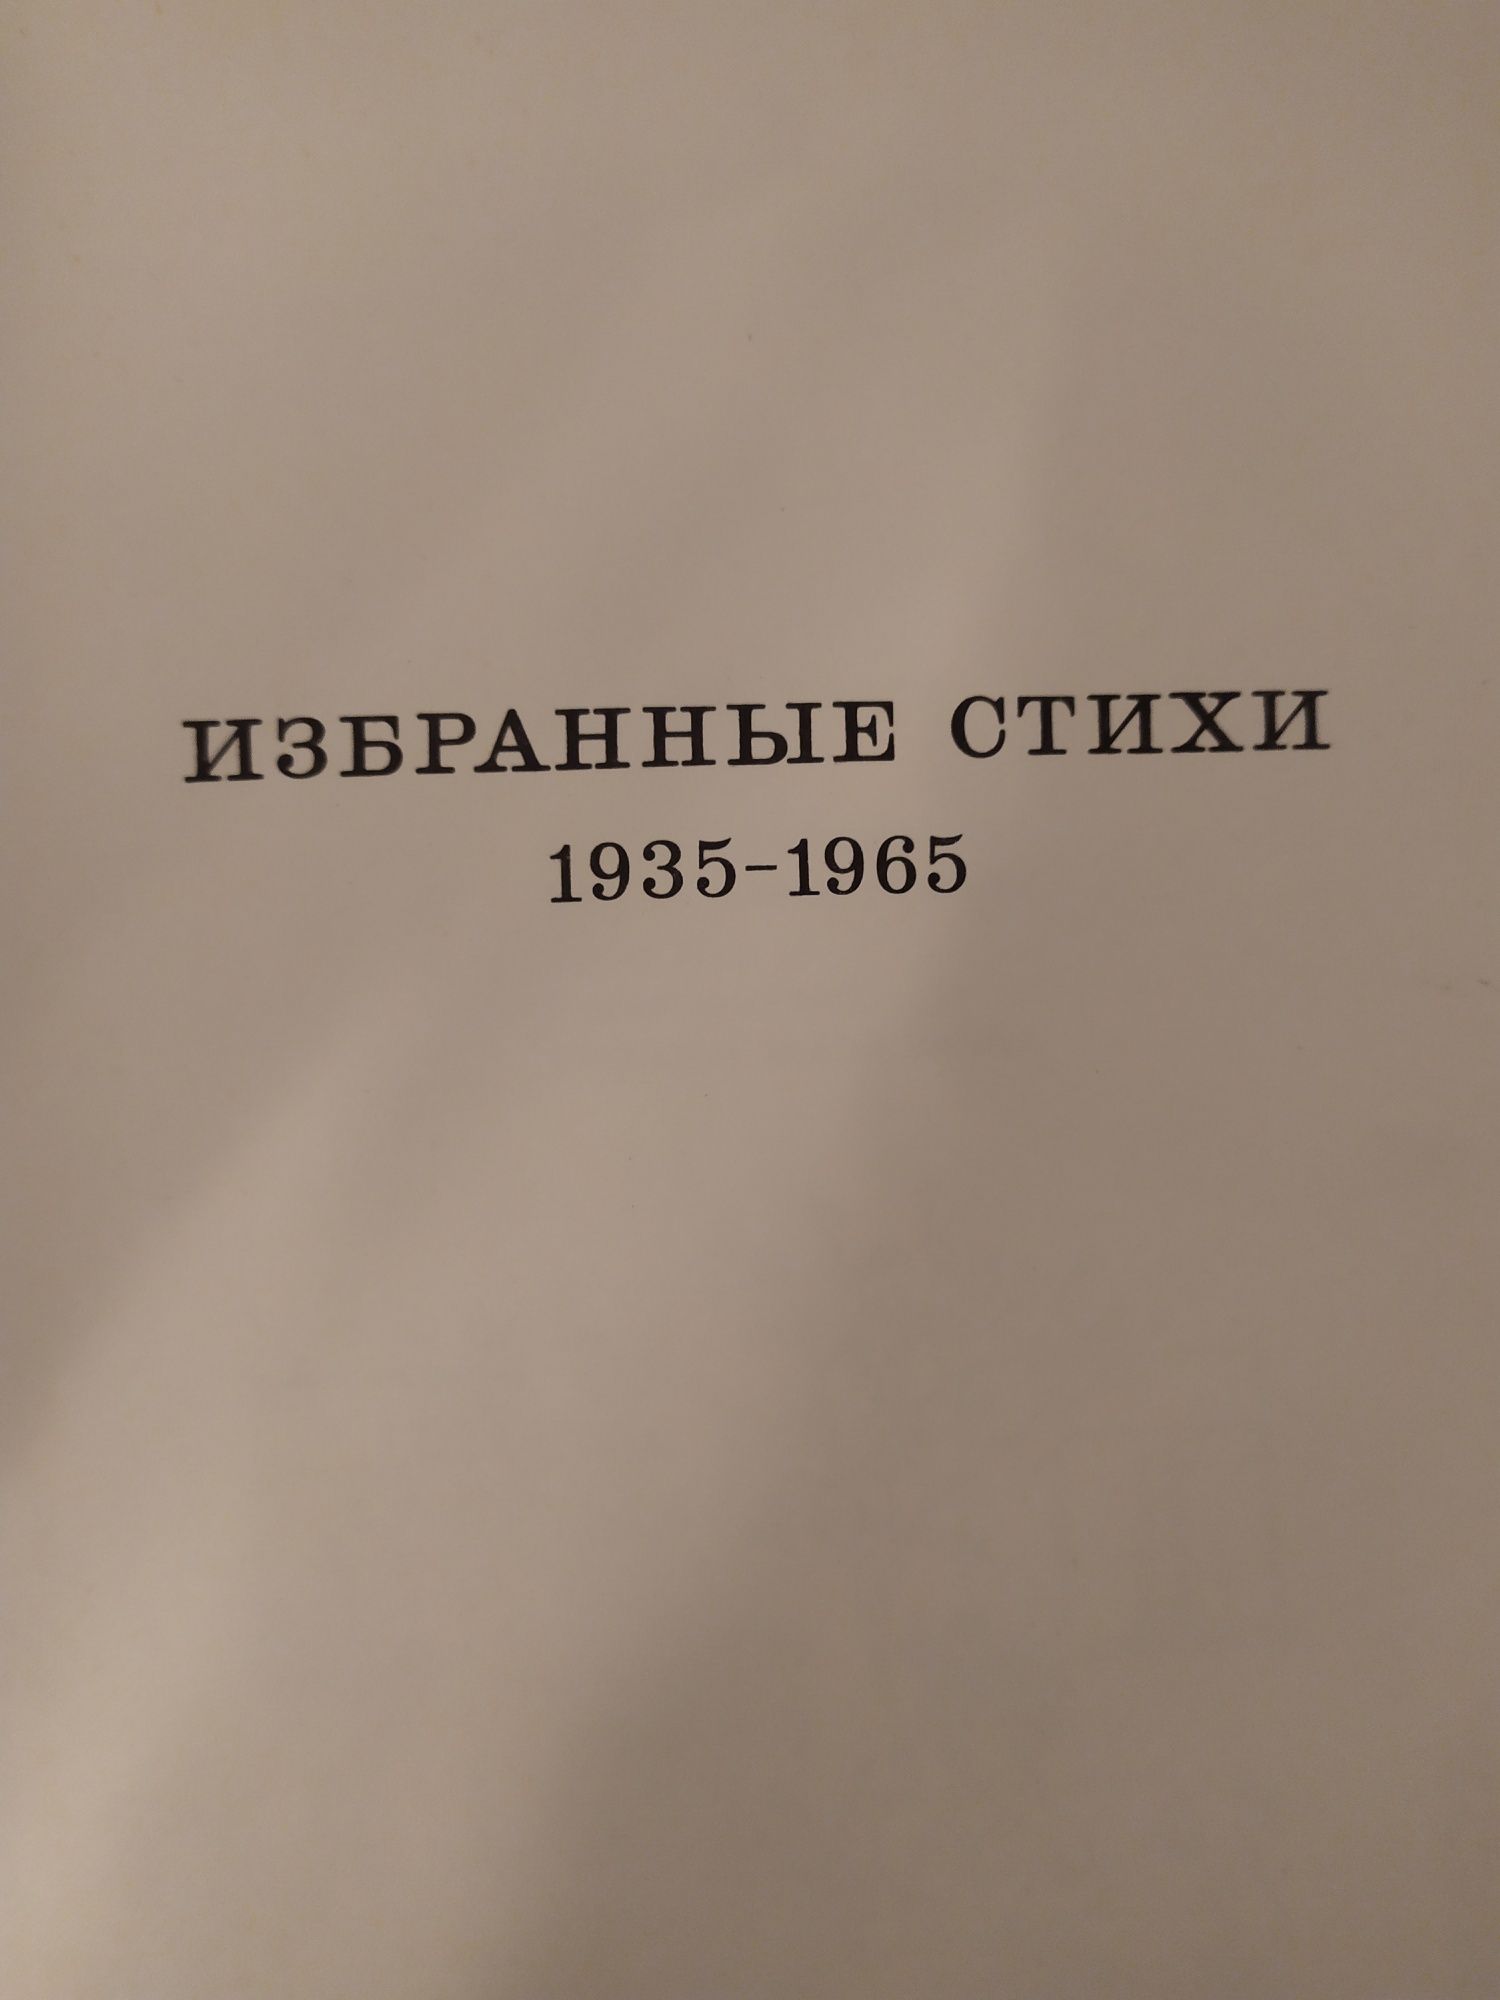 Михалков С. "Вчера, сегодня, завтра... Избранные стихи 1935-65г.".